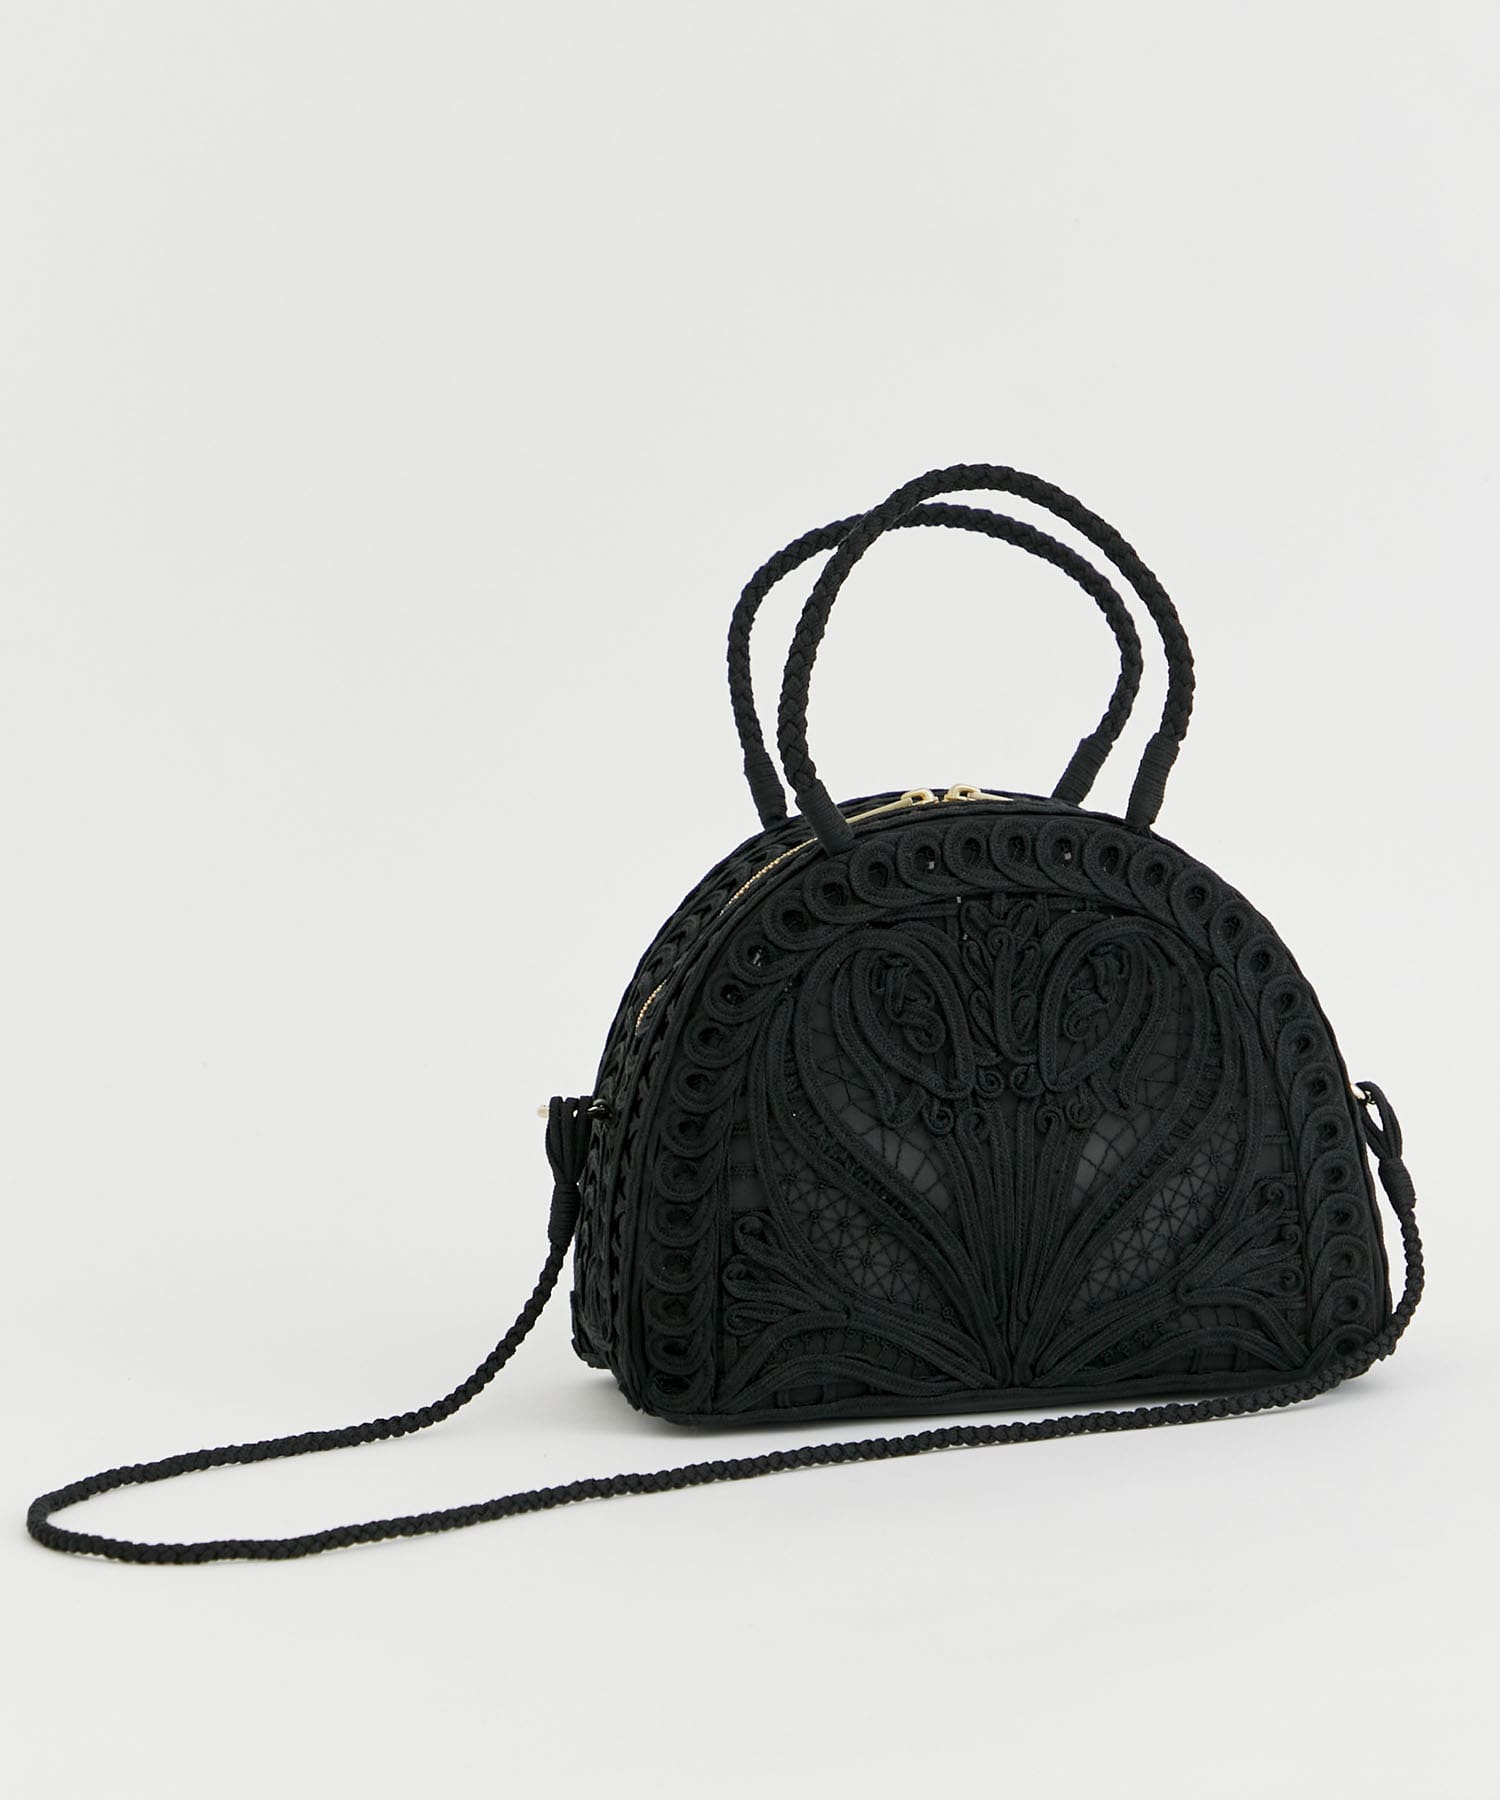 Cording Embroidery Demi Lune Handbag